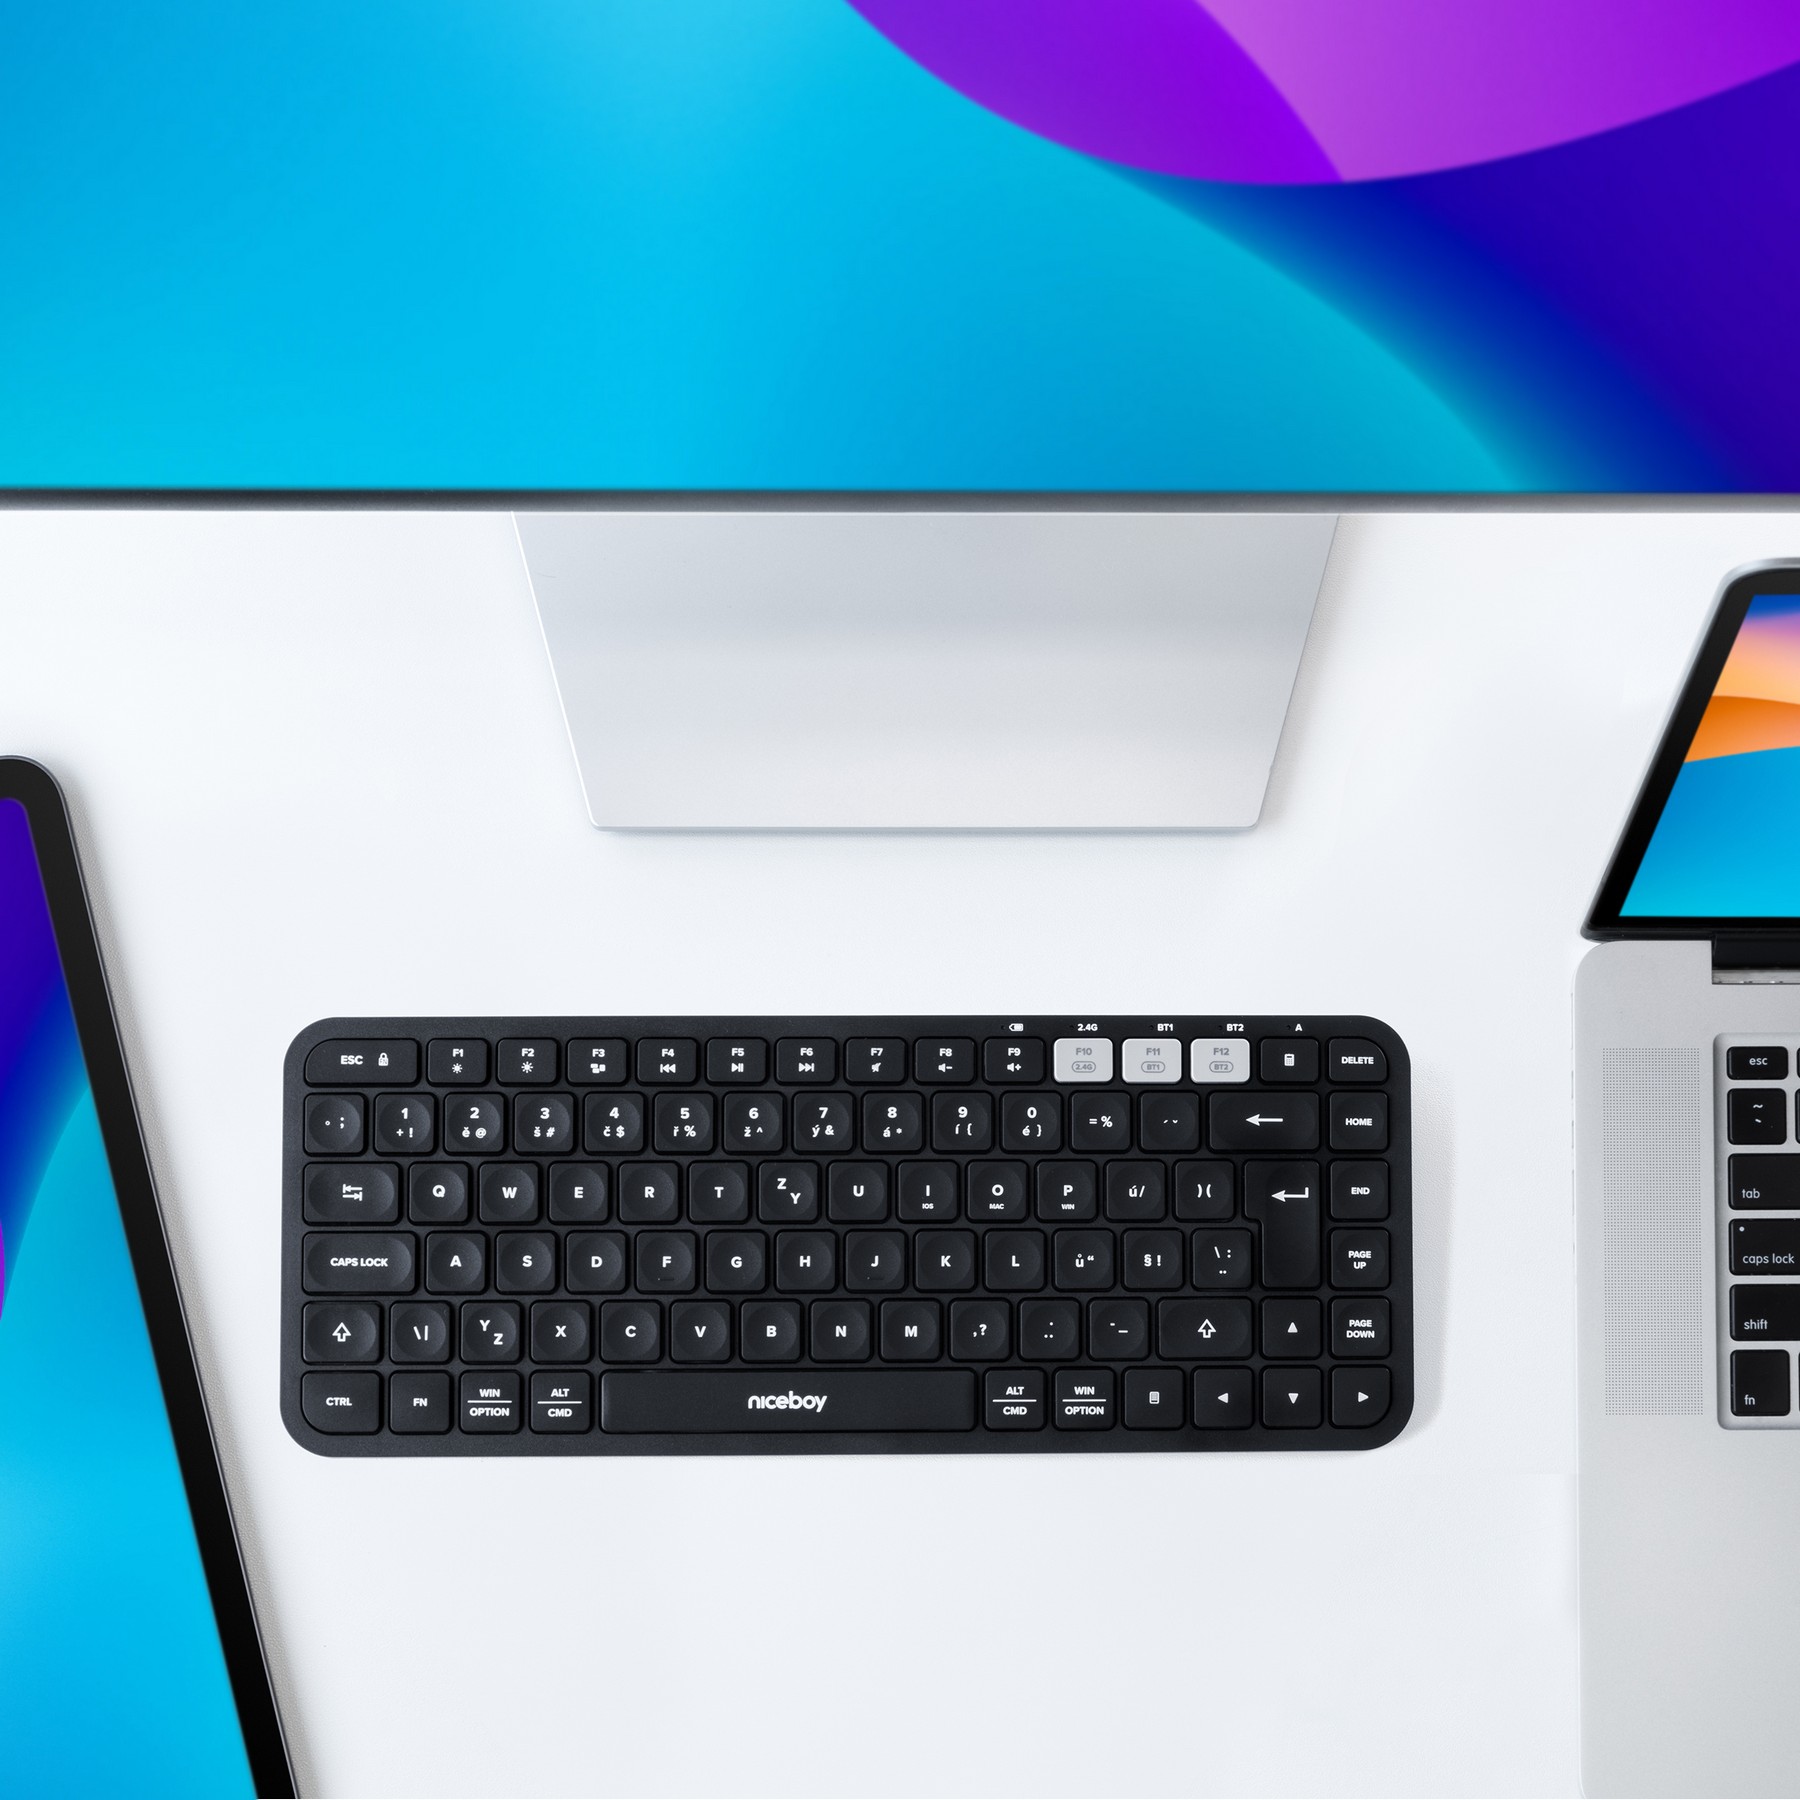 Bezdrátová klávesnice Niceboy Office K30X BT na stole u monitoru a notebooku